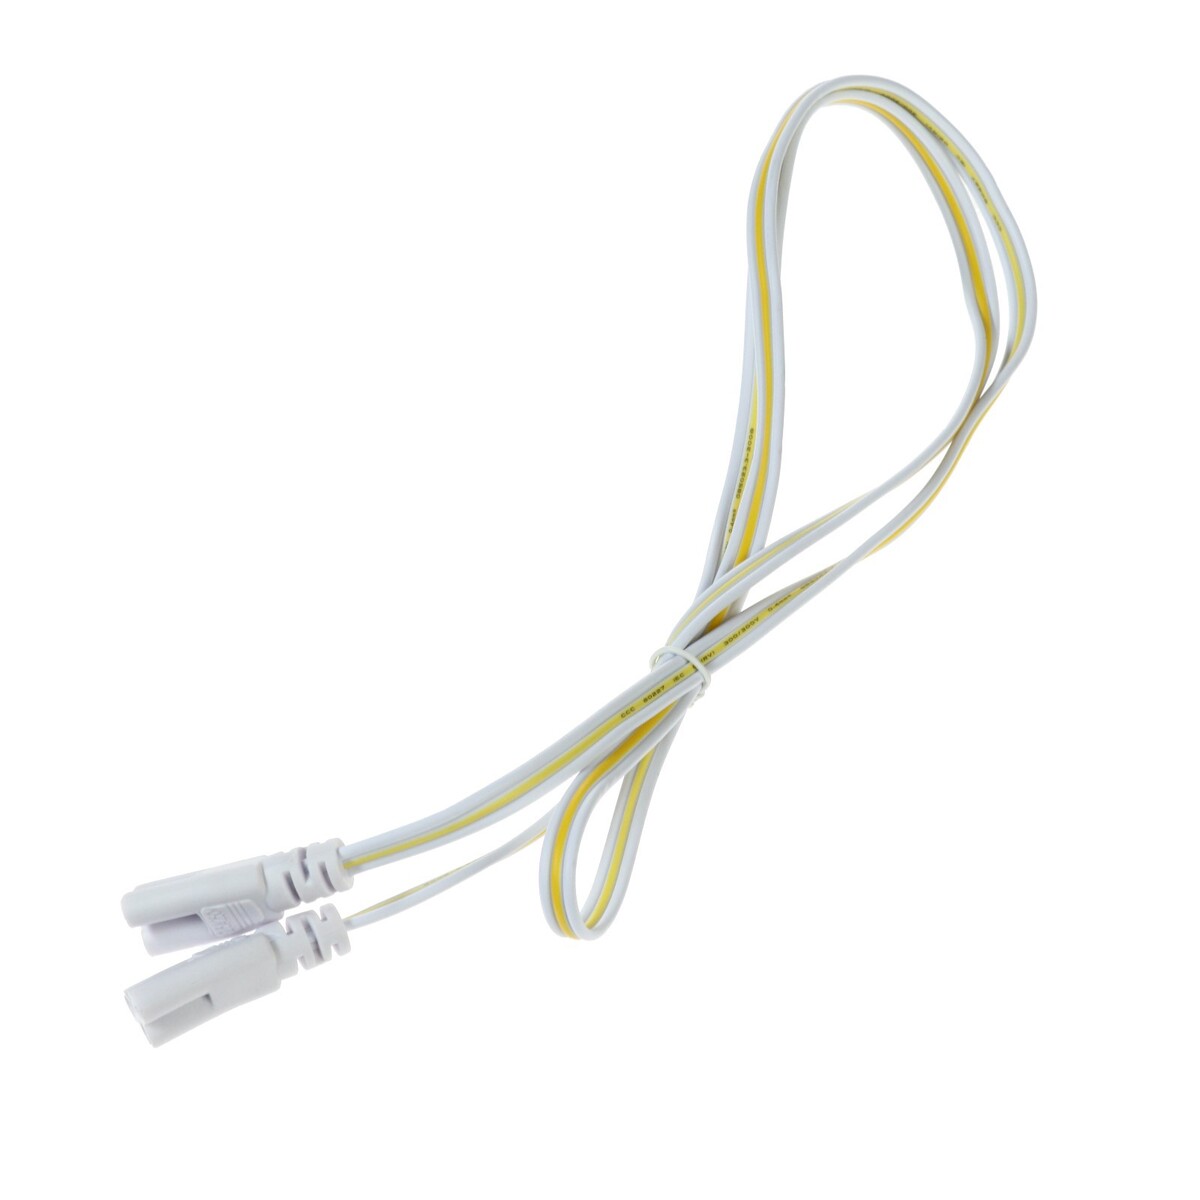 Провод соединительный для светильников, разъем l/n/g, 100 см, белый провод соединительный для светильников разъем l n g 50 см белый